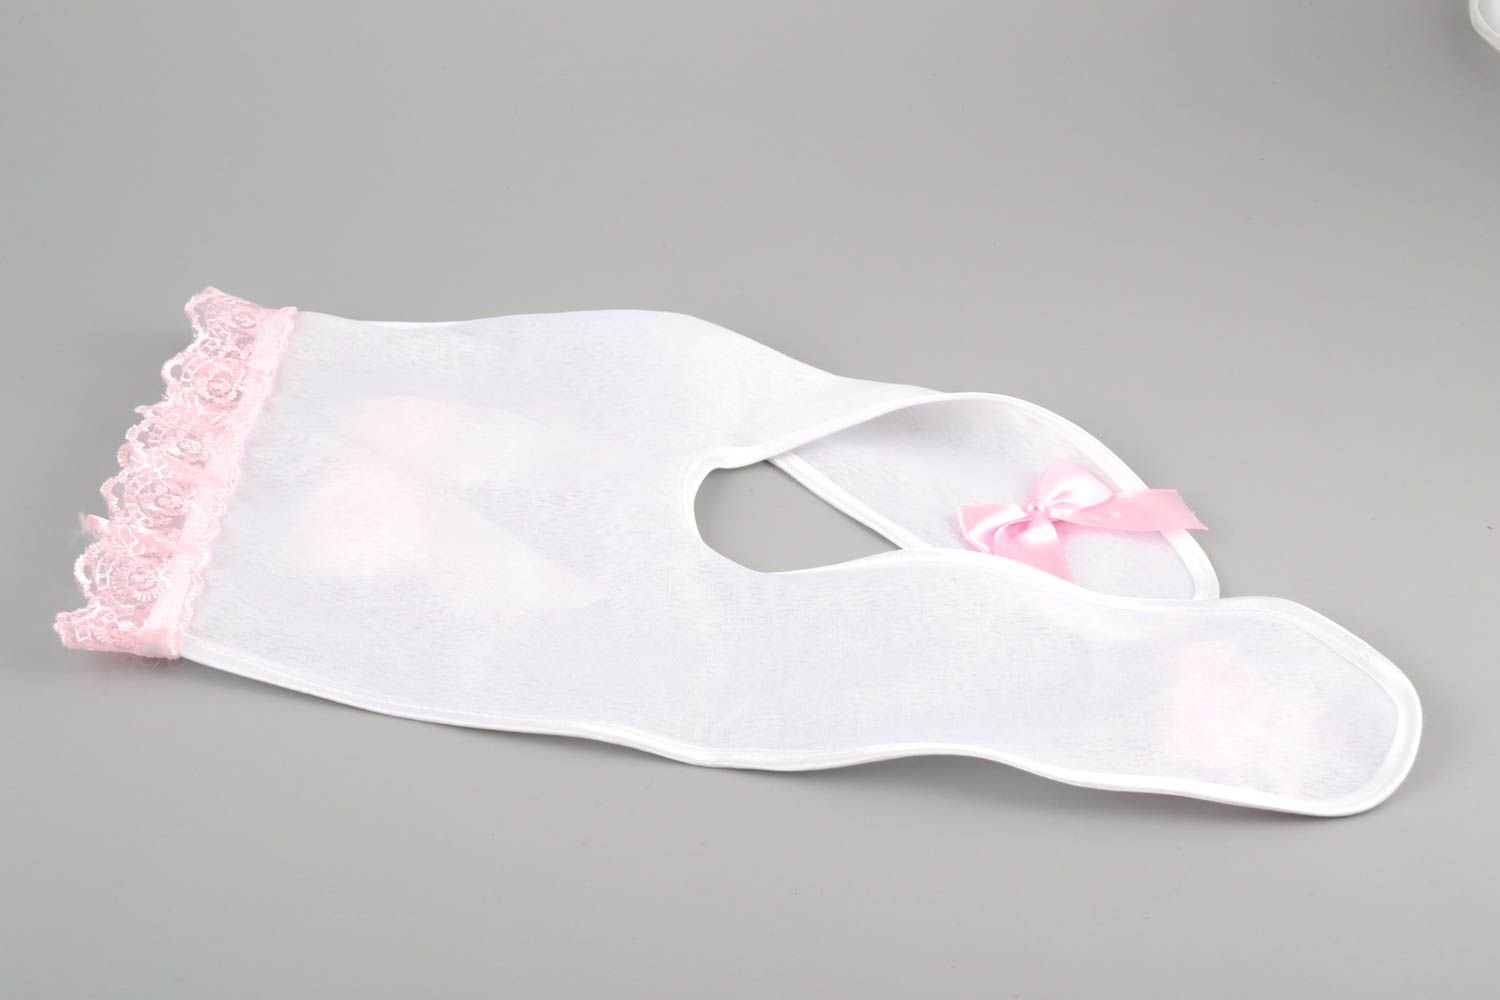 Handmade Geschenk Umschlag Idee für Geldgeschenk Design Verpackung weiß rosa foto 4